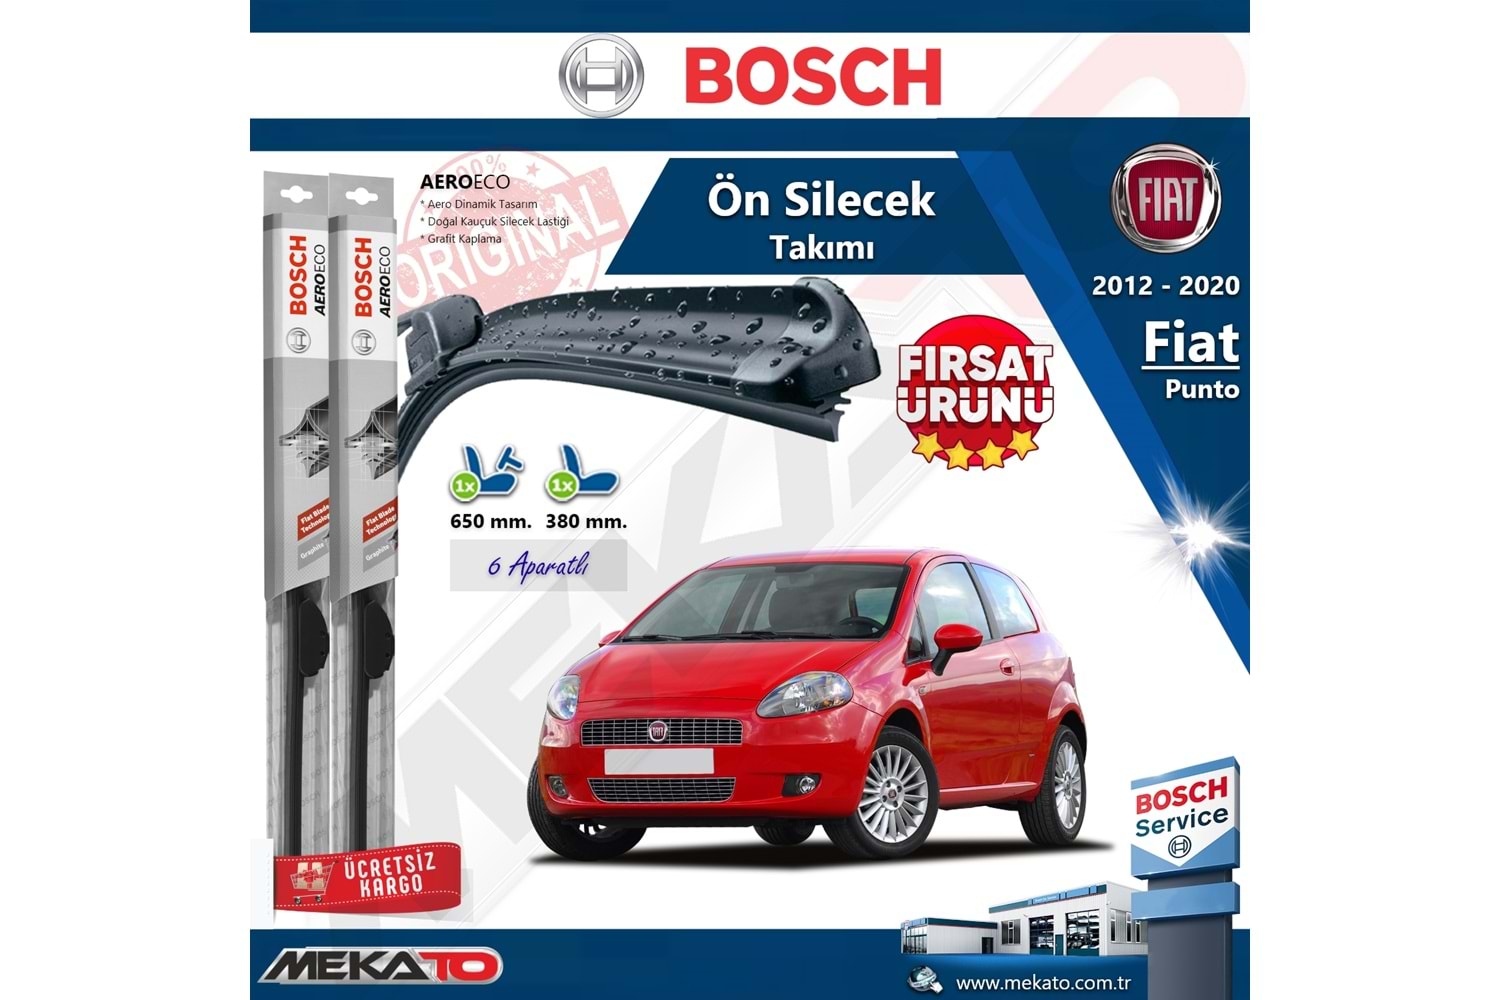 Fiat Punto Ön Silecek Takımı Bosch Aero Eco 2012-2020